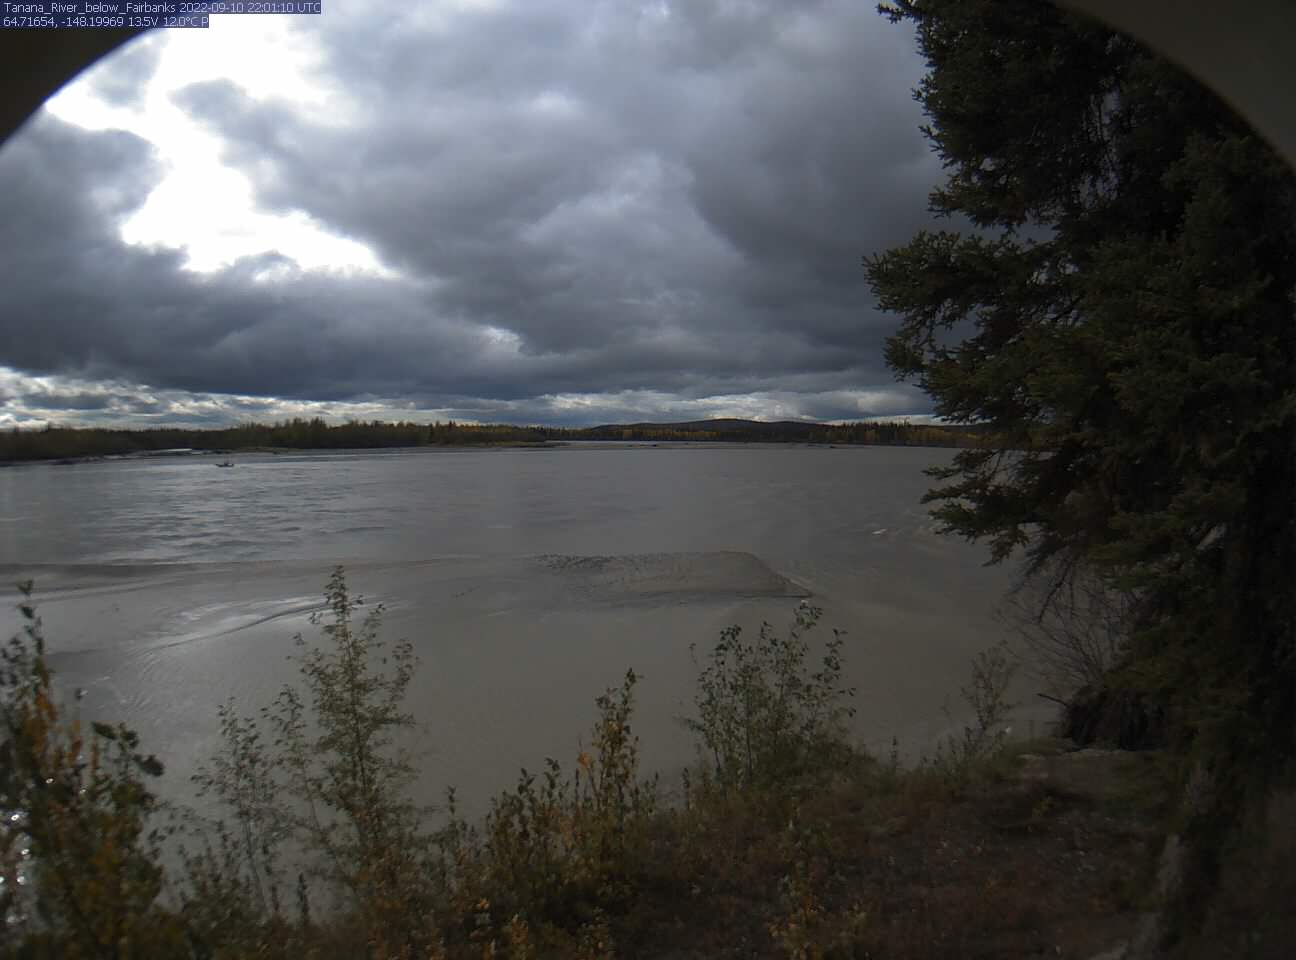 Tanana_River_below_Fairbanks_20220910220111.jpg